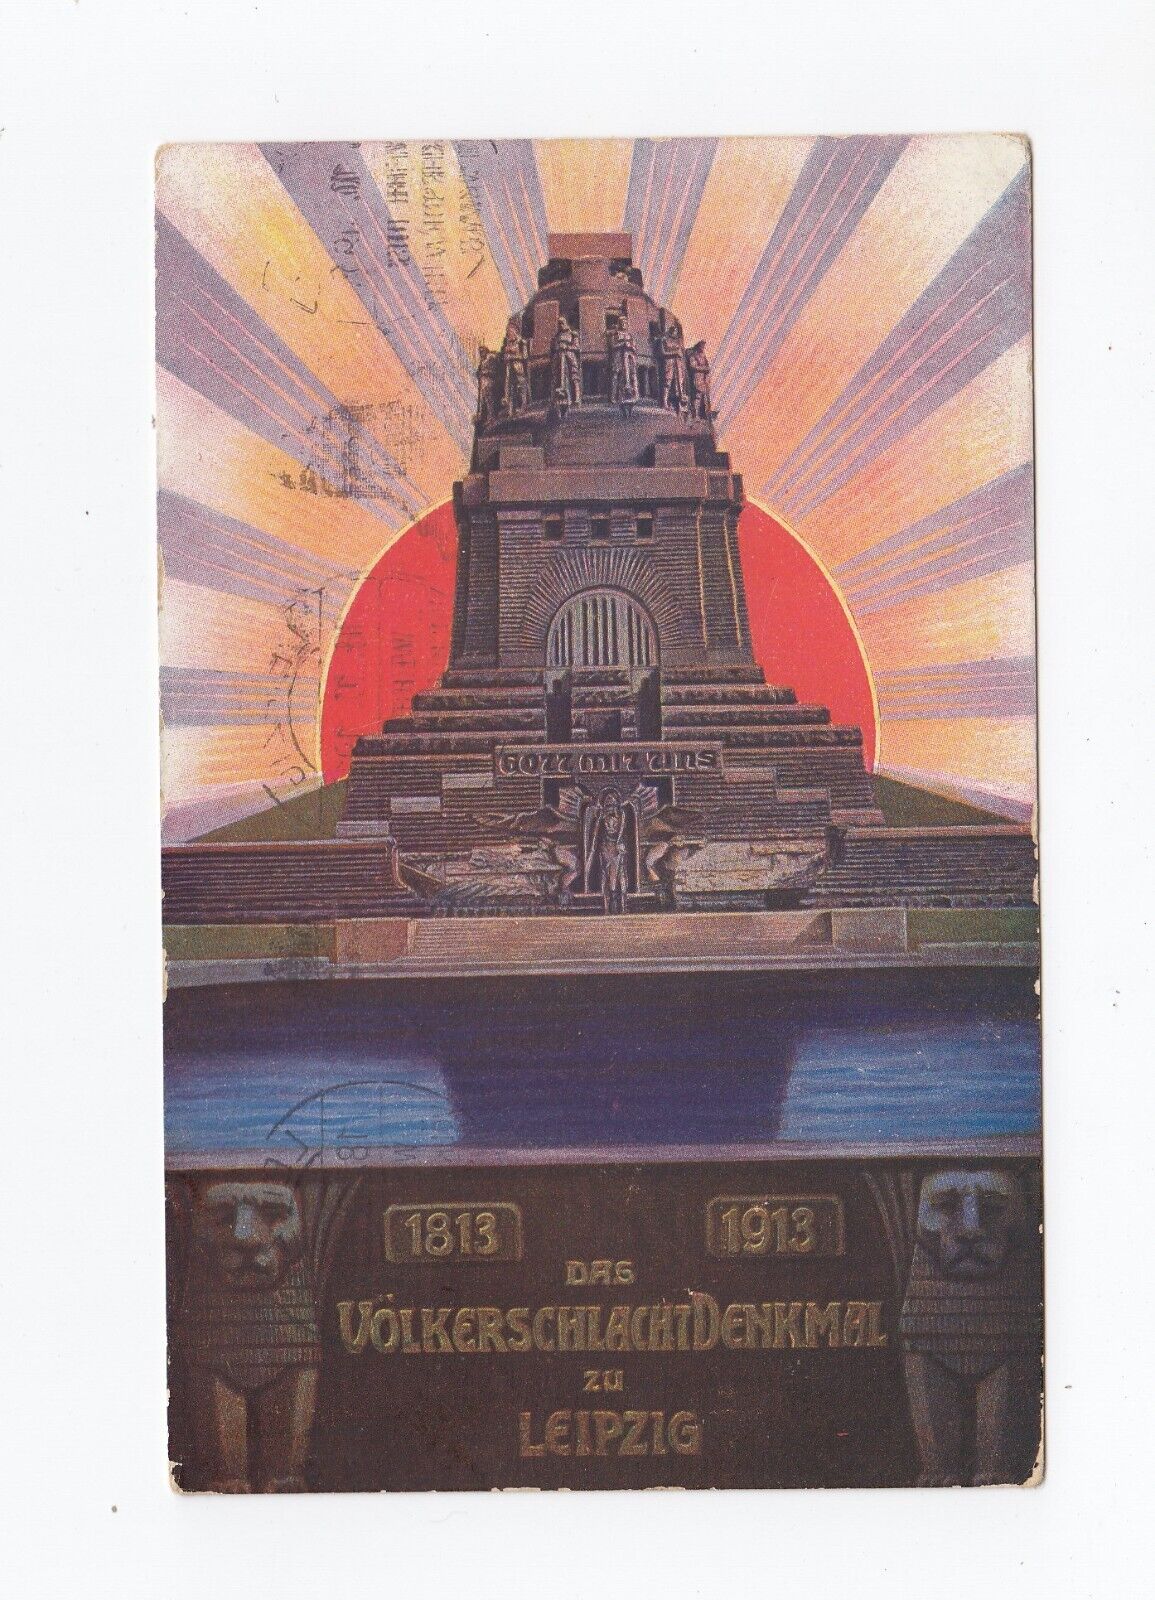 Leipzig Postcard 1813-1913 Volkerschlacht Denkmals Monument Battle Nations